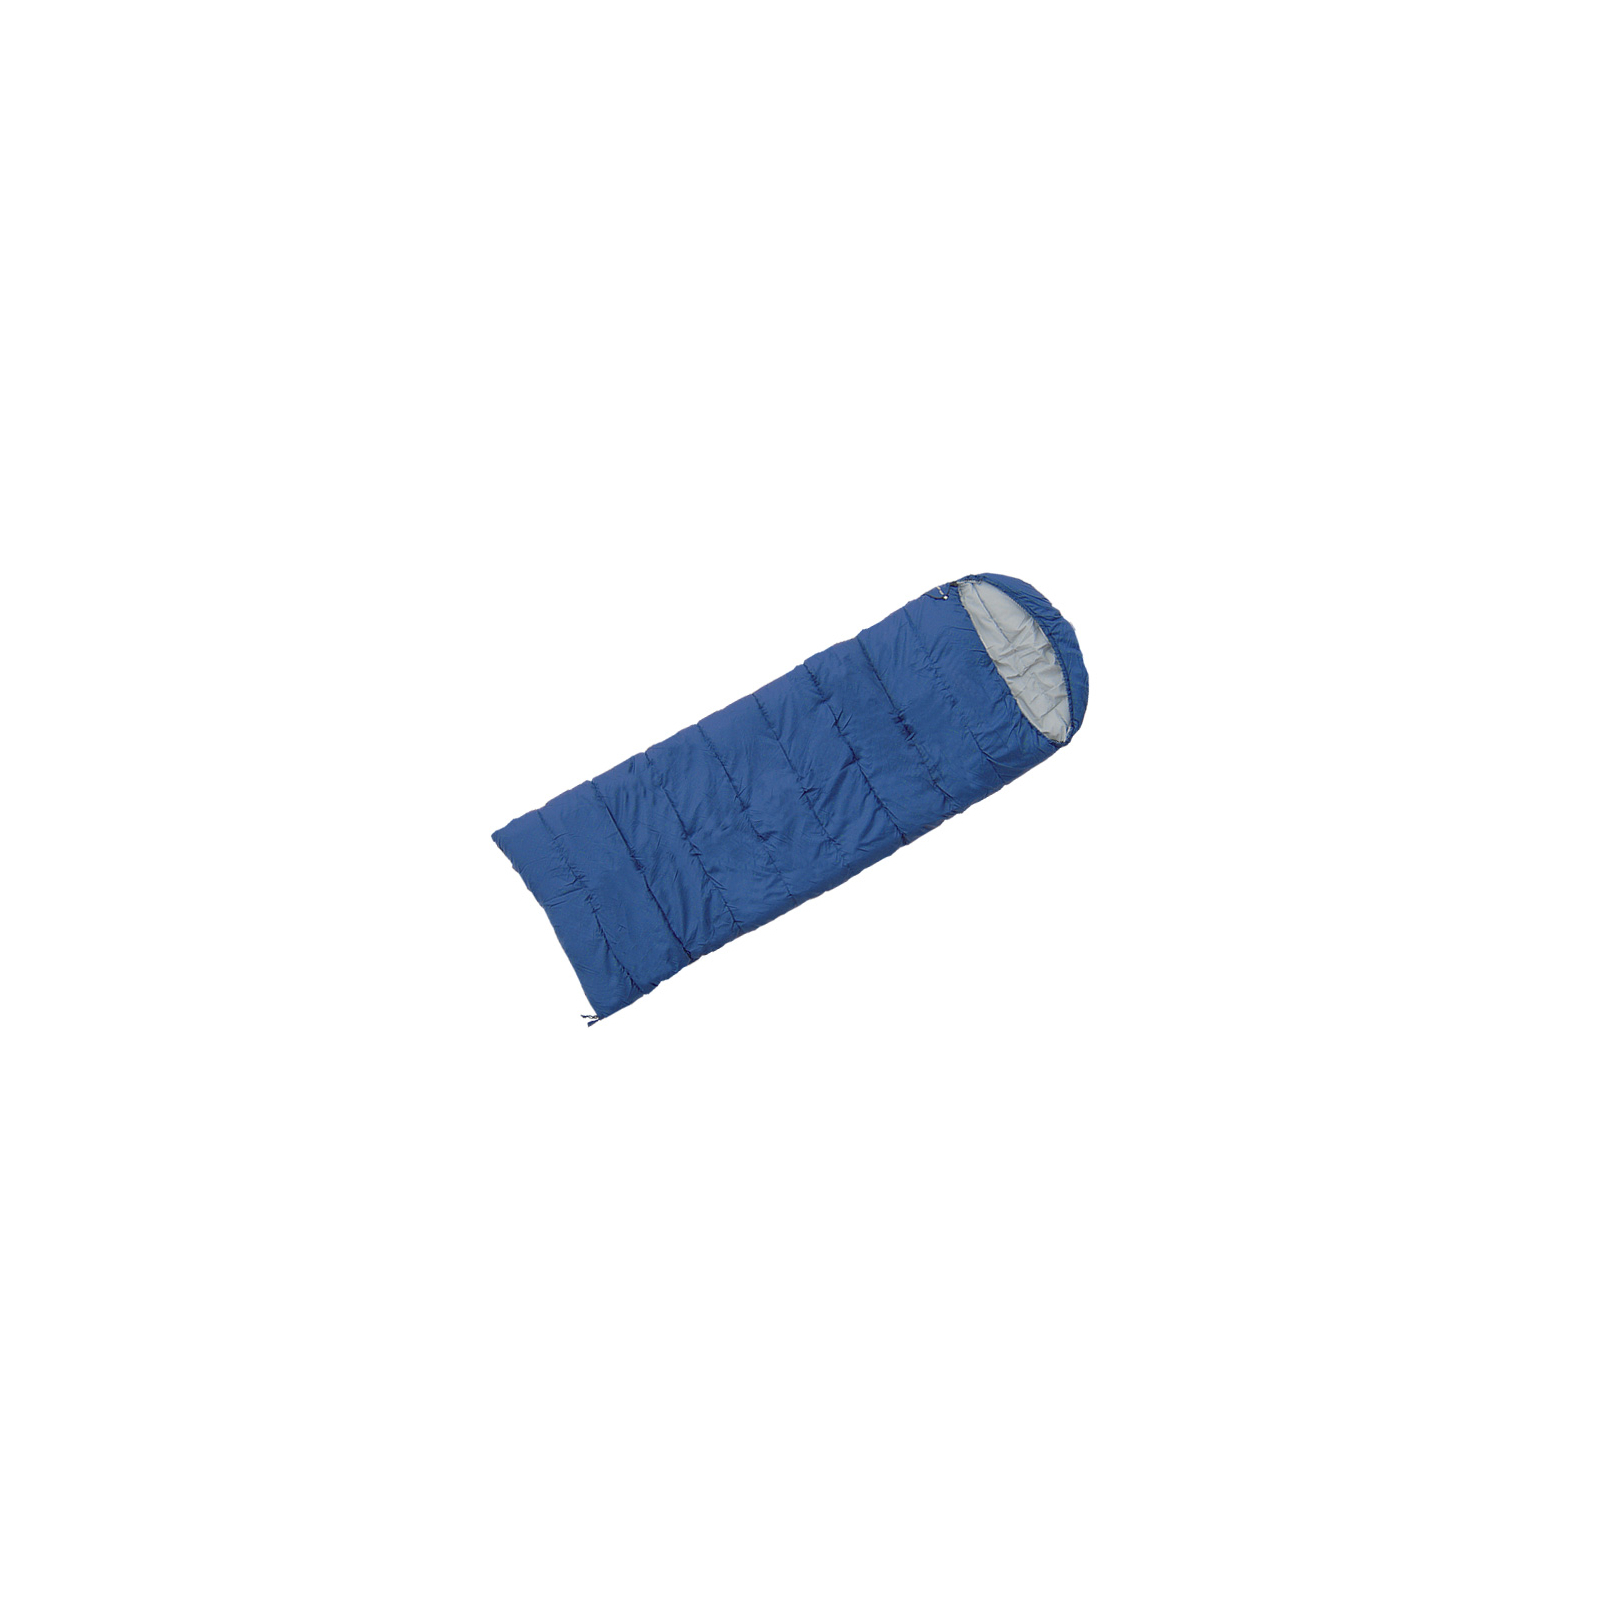 Спальный мешок Terra Incognita Asleep 200 L dark blue (4823081502135)